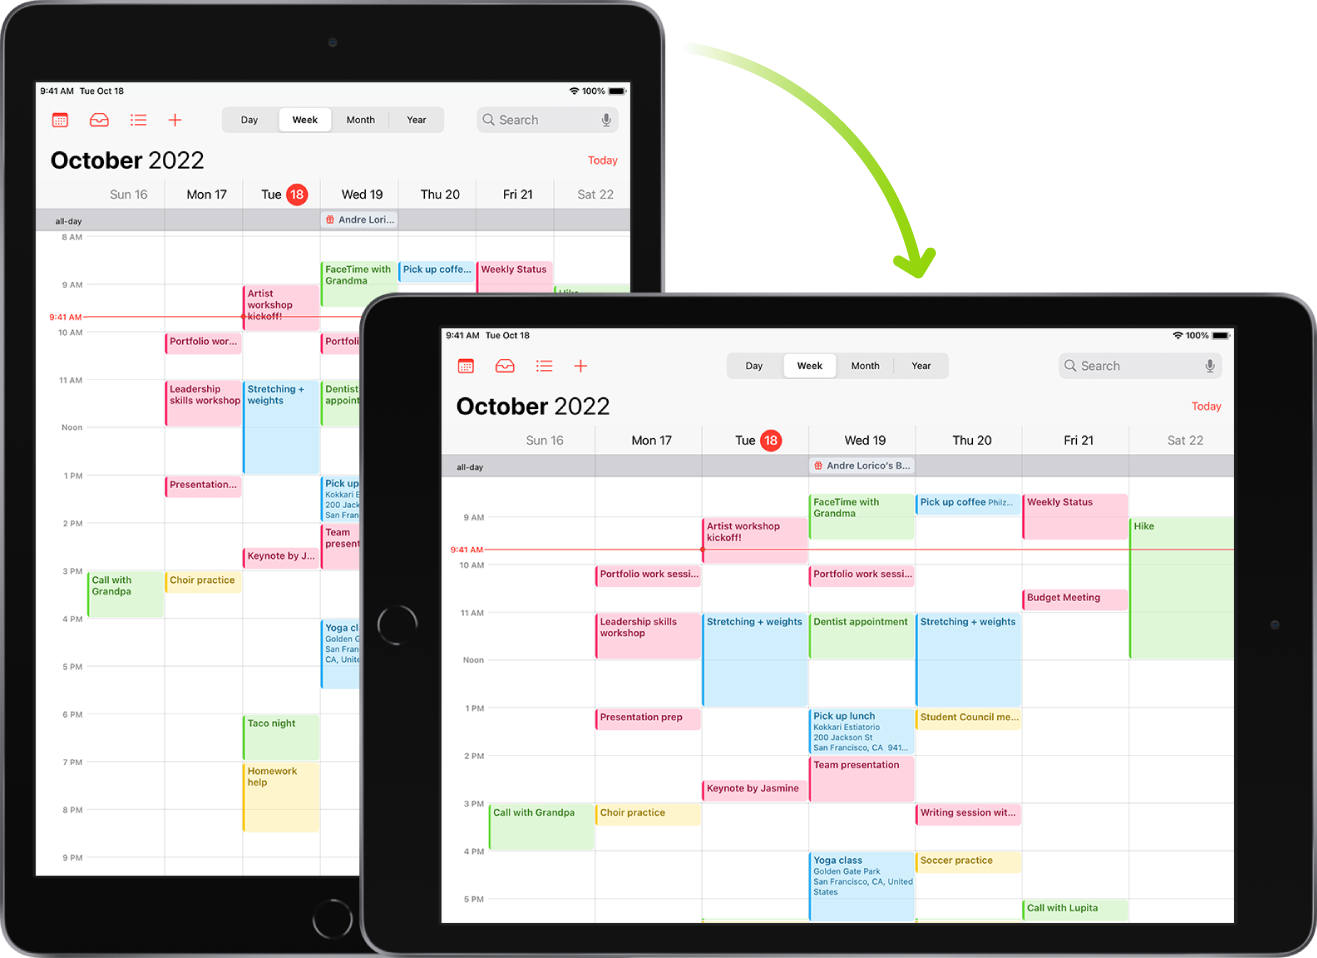 Aizmugurējā attēlā iPad ierīces ekrānā ir redzama lietotne Calendar portretorientācijā; priekšplānā iPad ierīce ir pagriezta un rāda lietotni Calendar ainavorientācijā.